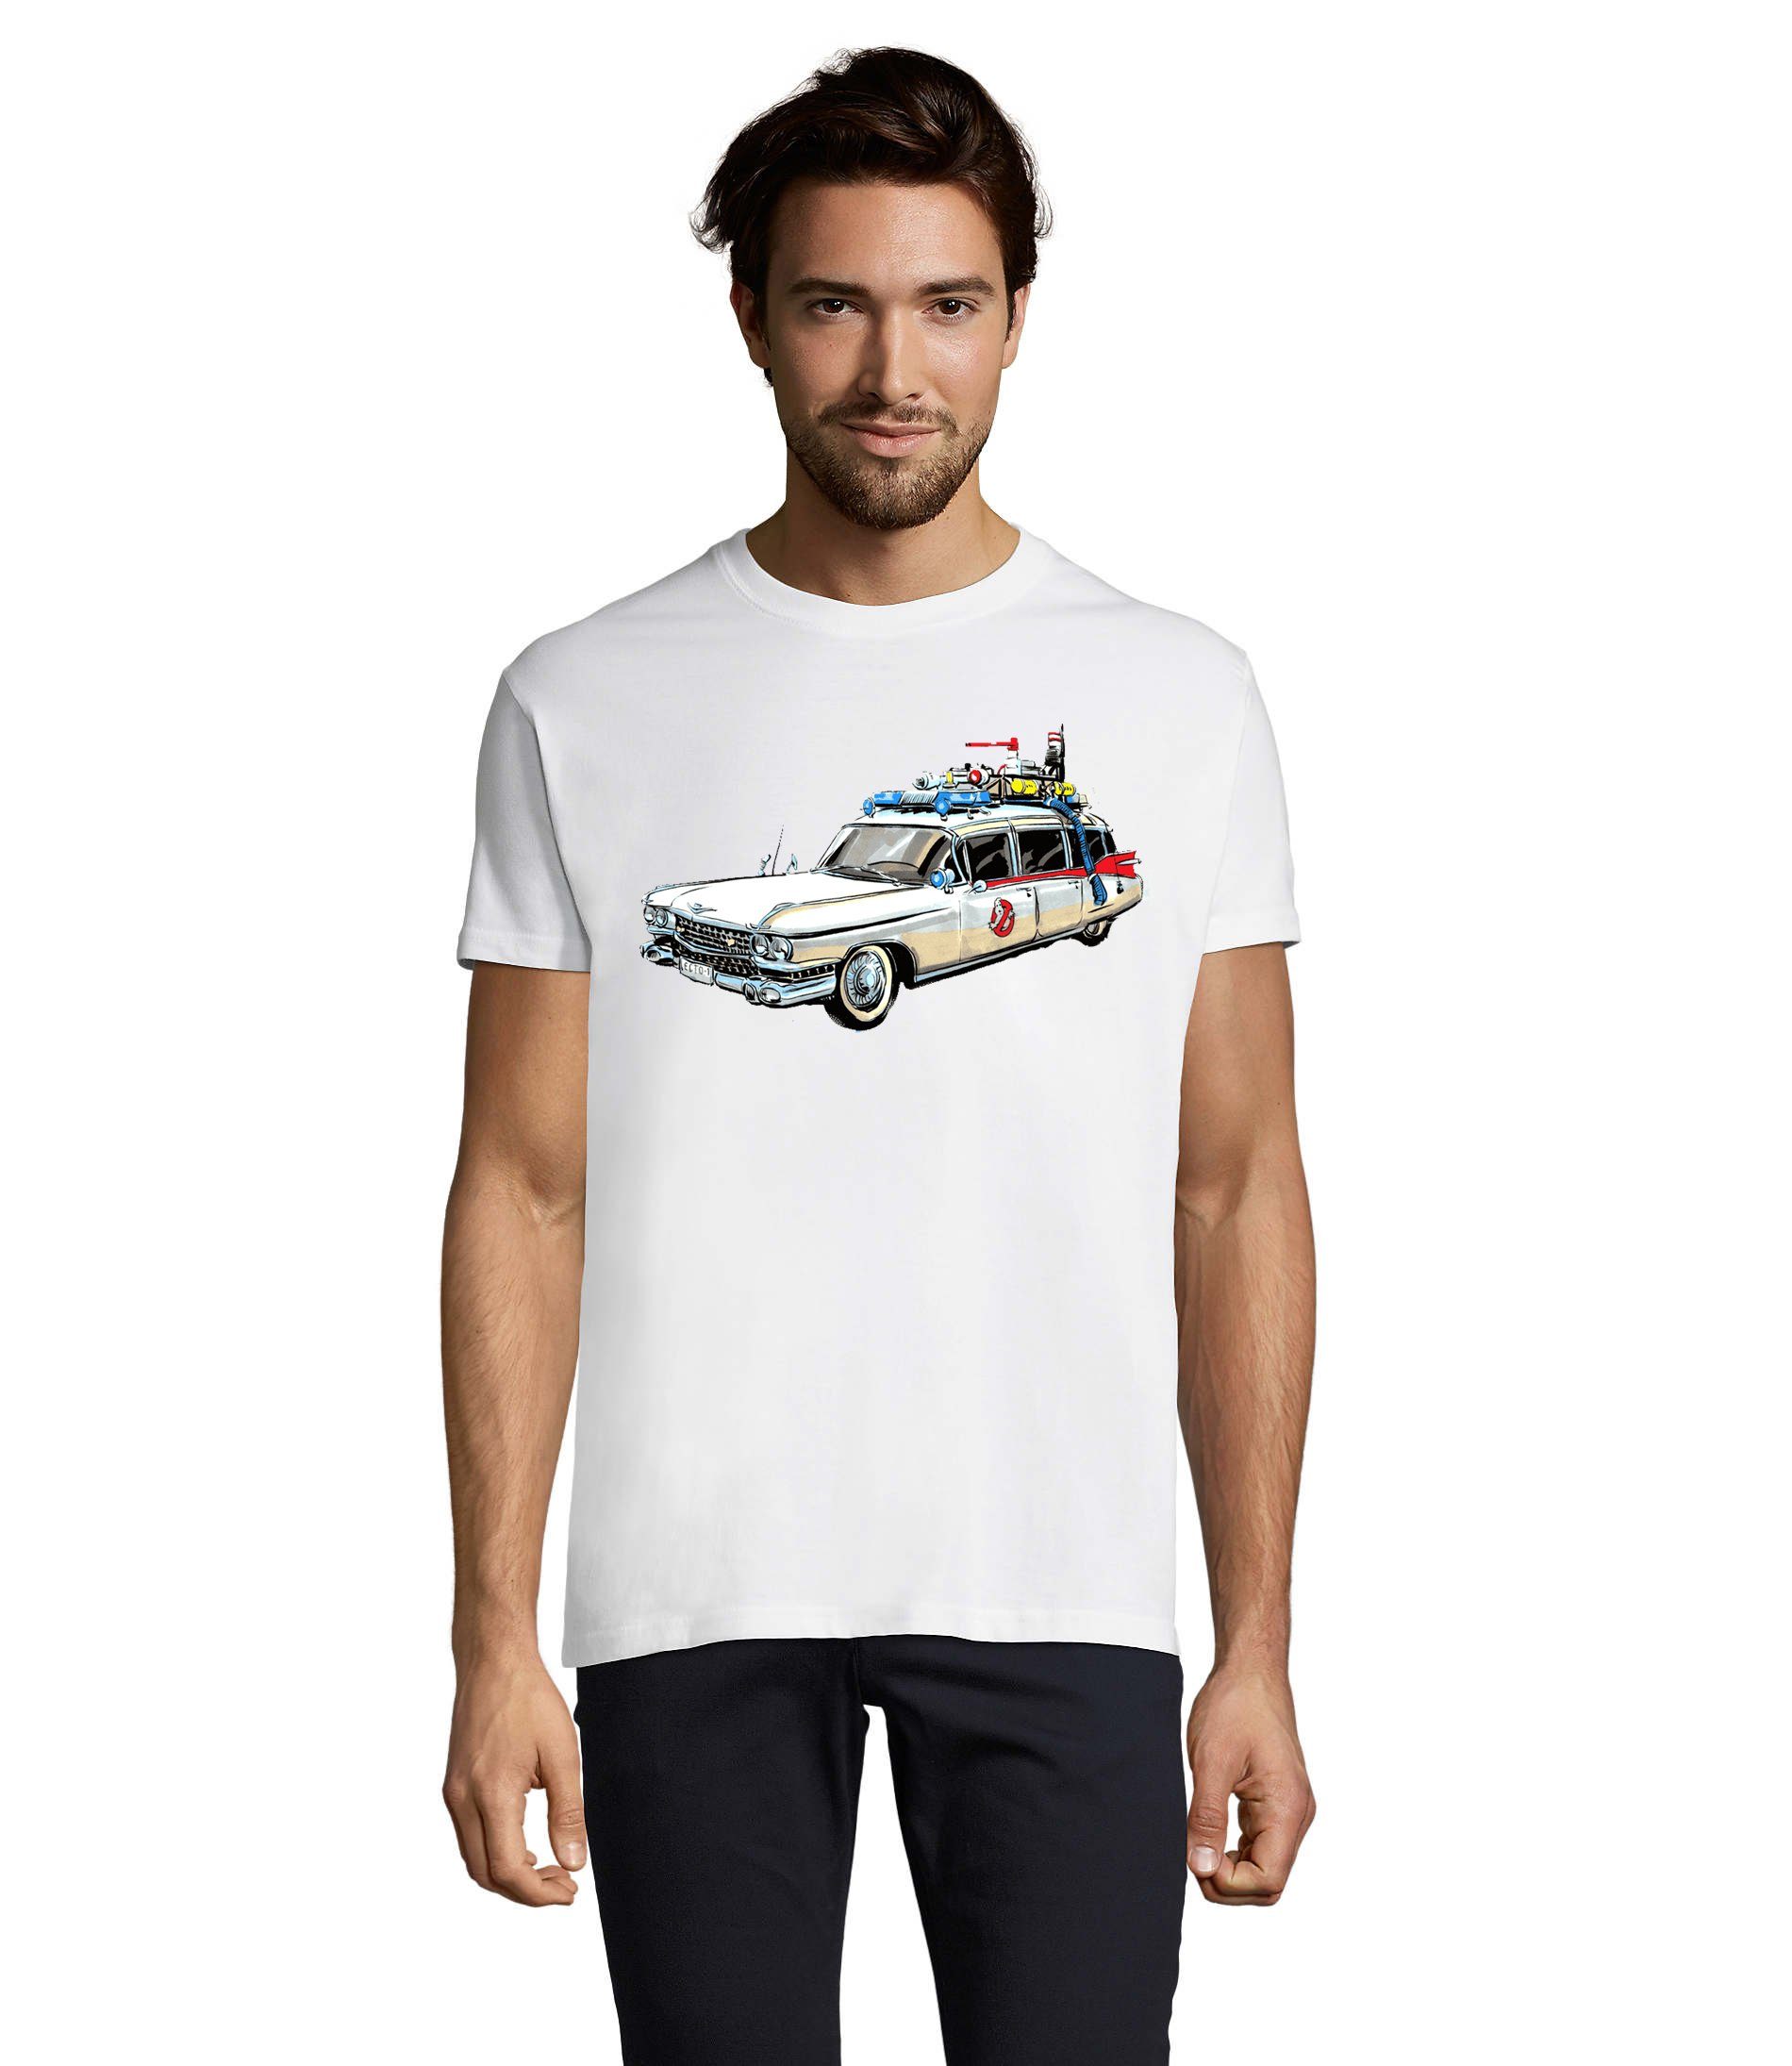 Blondie & Brownie T-Shirt Herren Geisterjäger Ghostbusters Weiß Auto Geister Cars Ghost Film